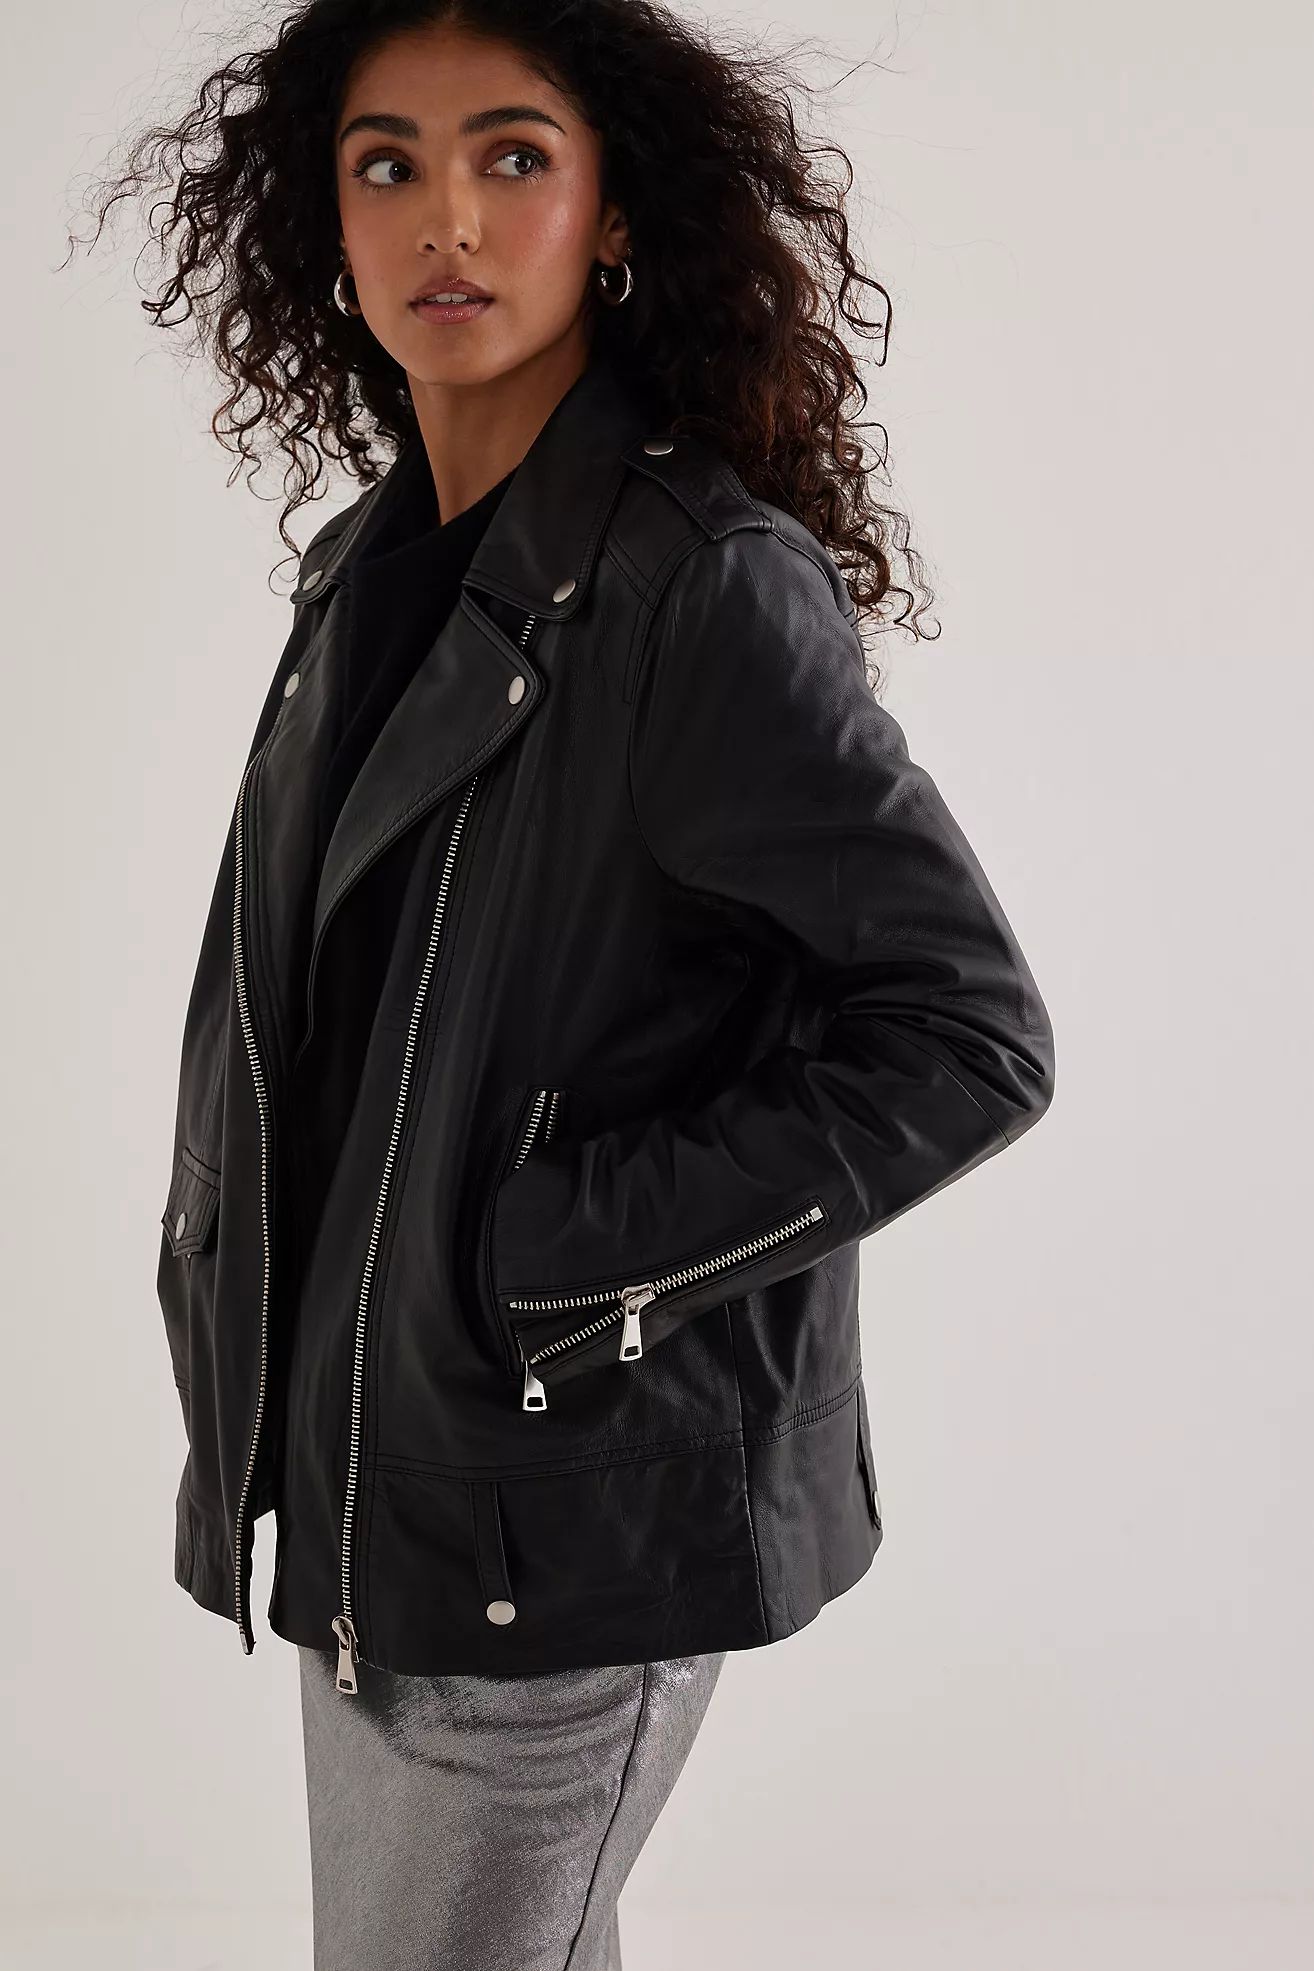 Selected Femme Madison Leather Jacket | Anthropologie (UK)